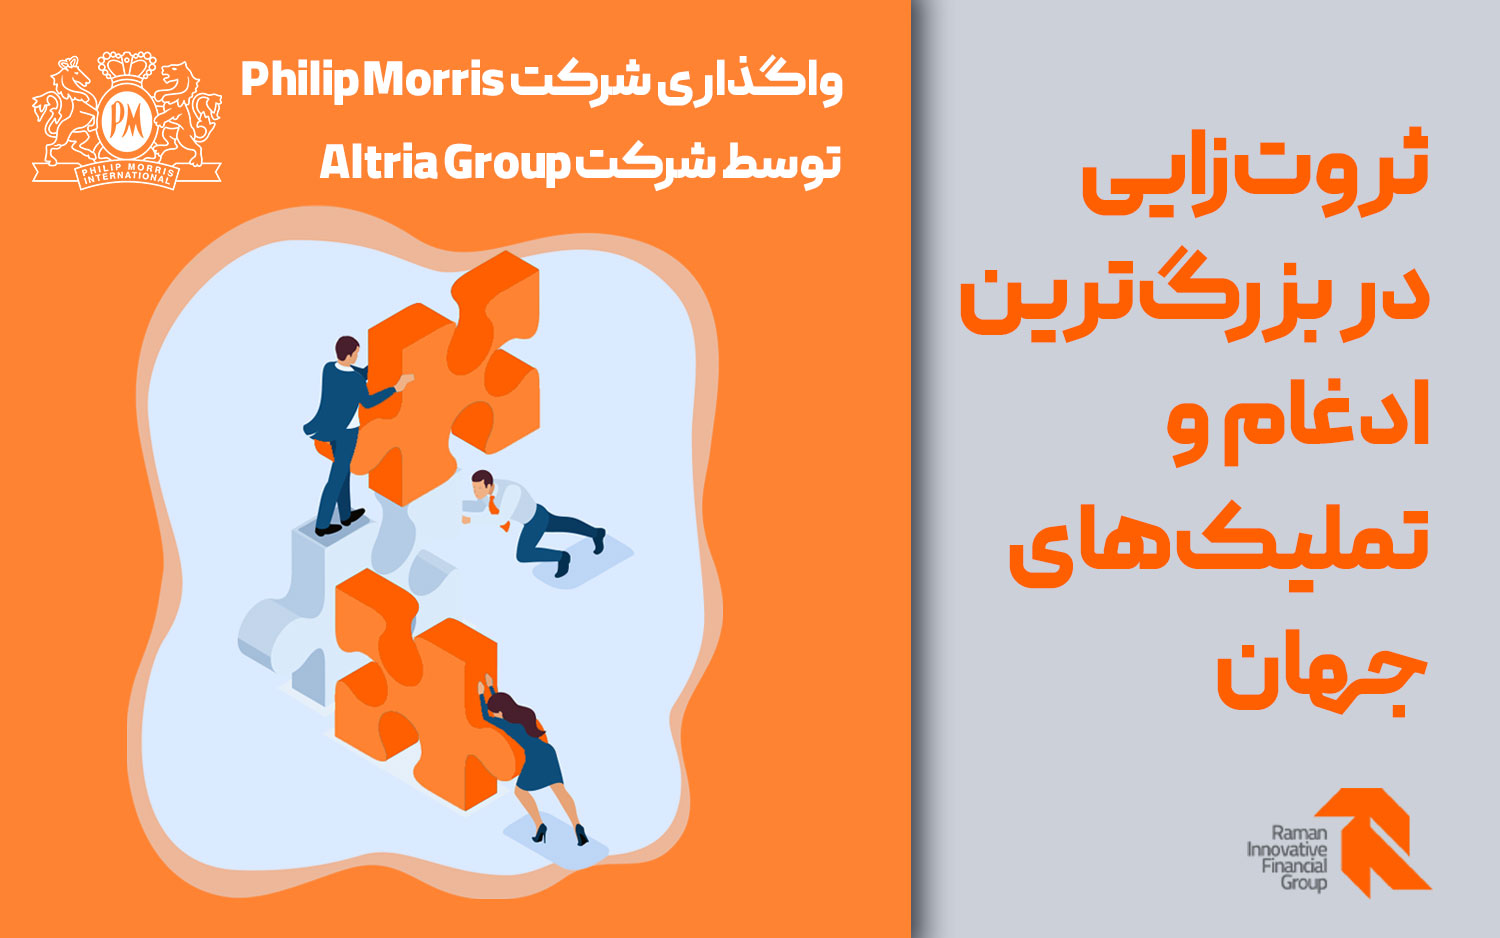 واگذاری شرکت Philip Morris توسط شرکت Altria Group